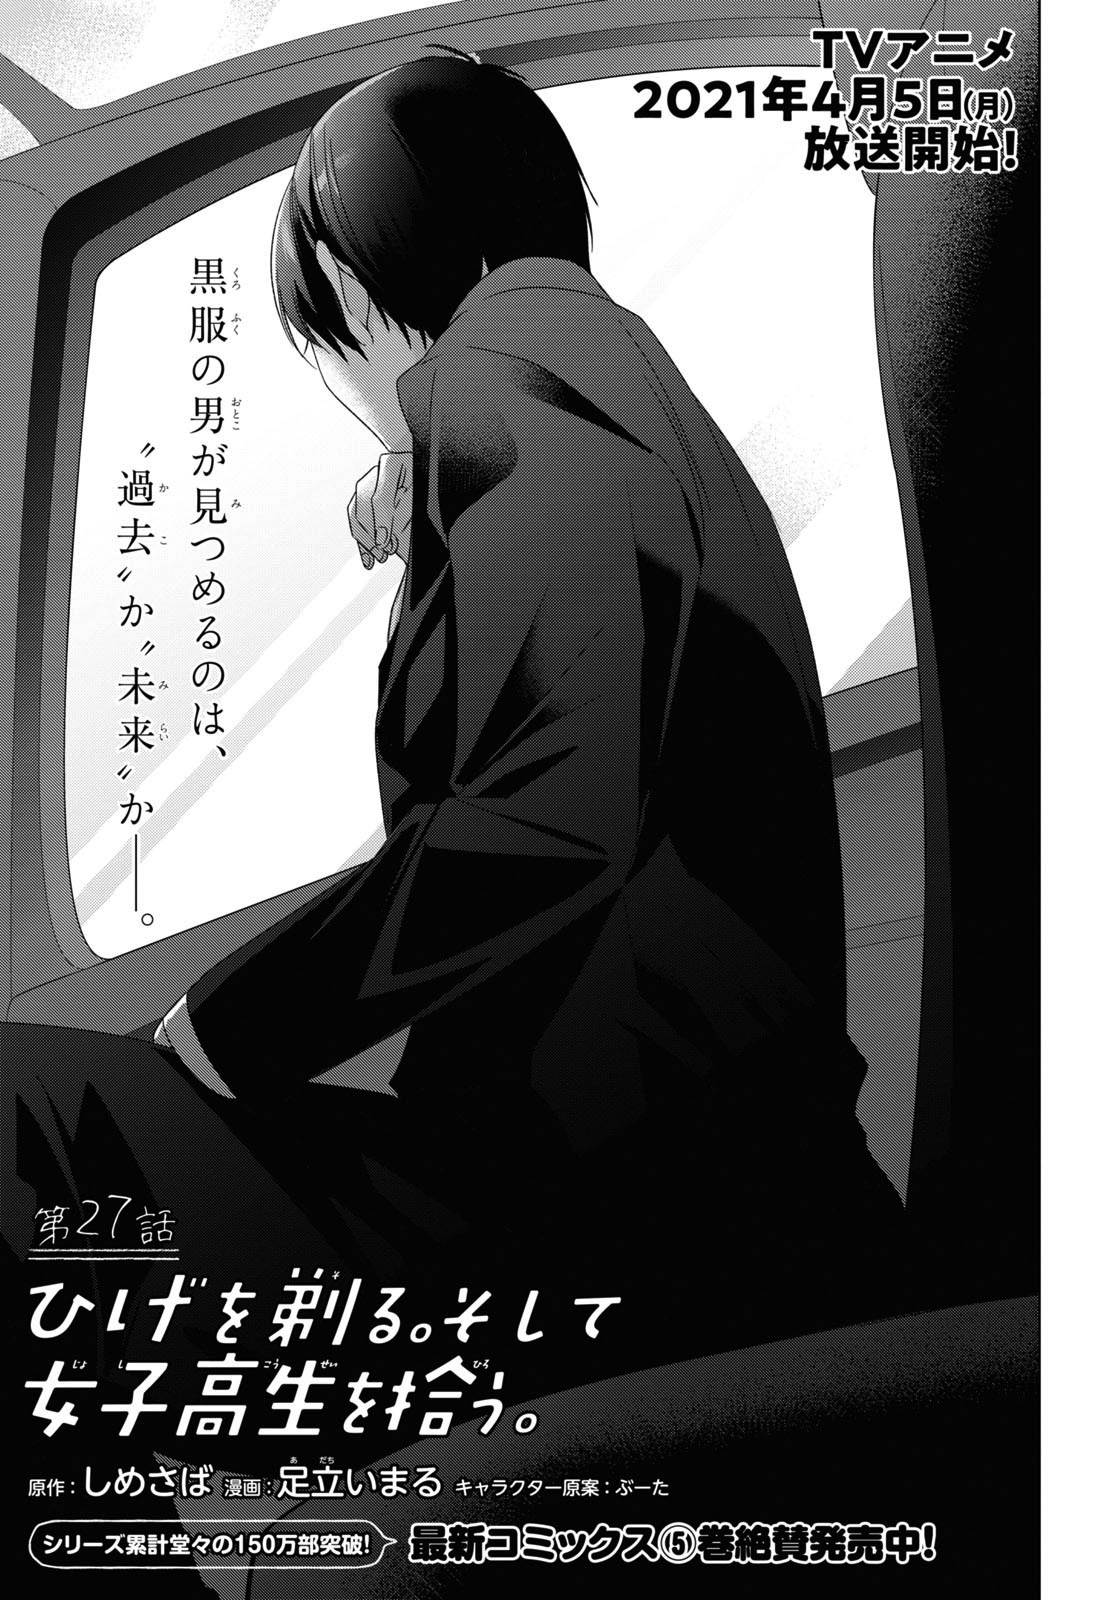 Higehiro manga